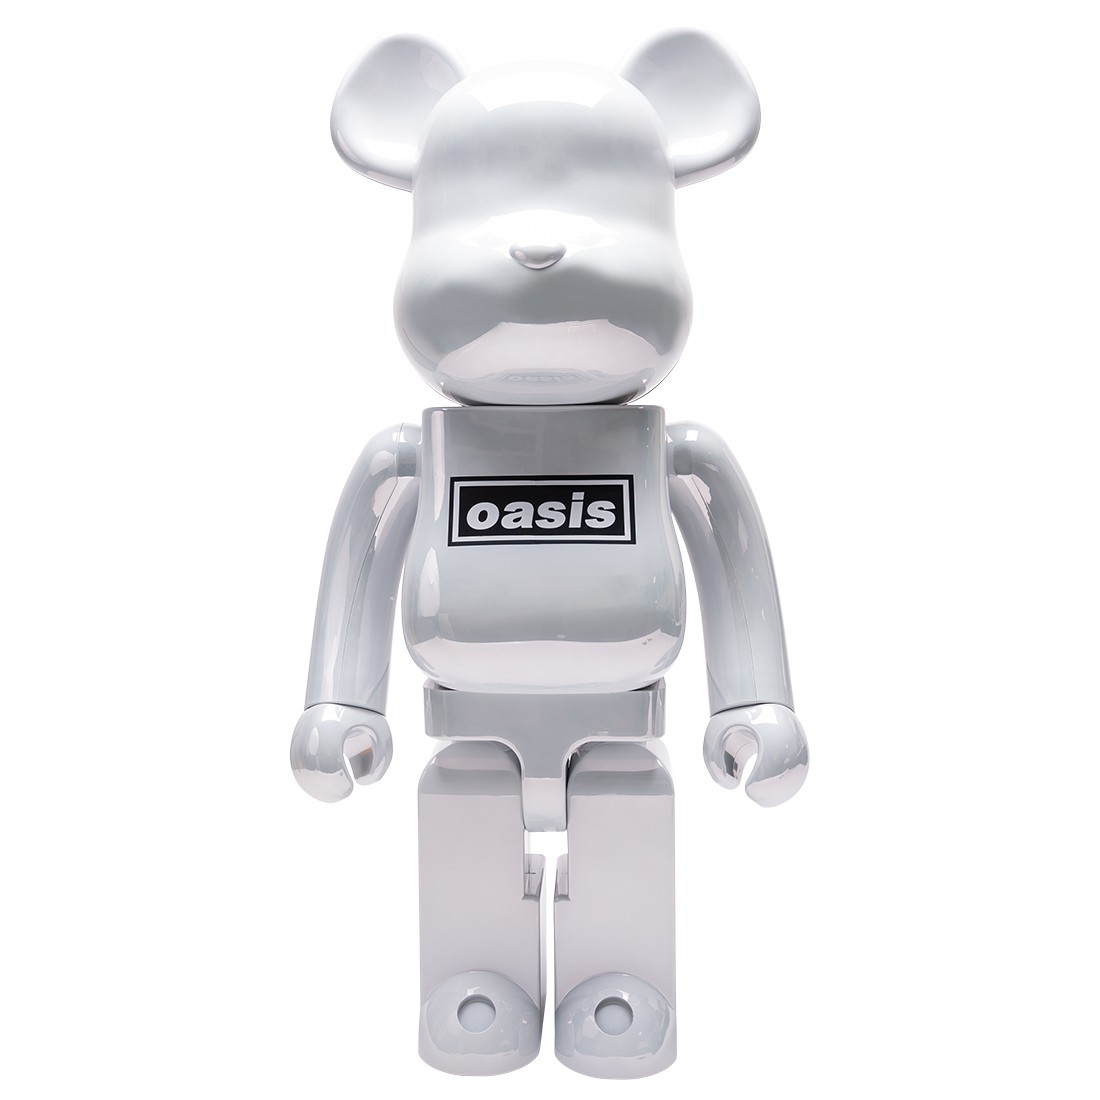 Medicom Oasis Merchandising White Chrome 1000% Bearbrick Figure white